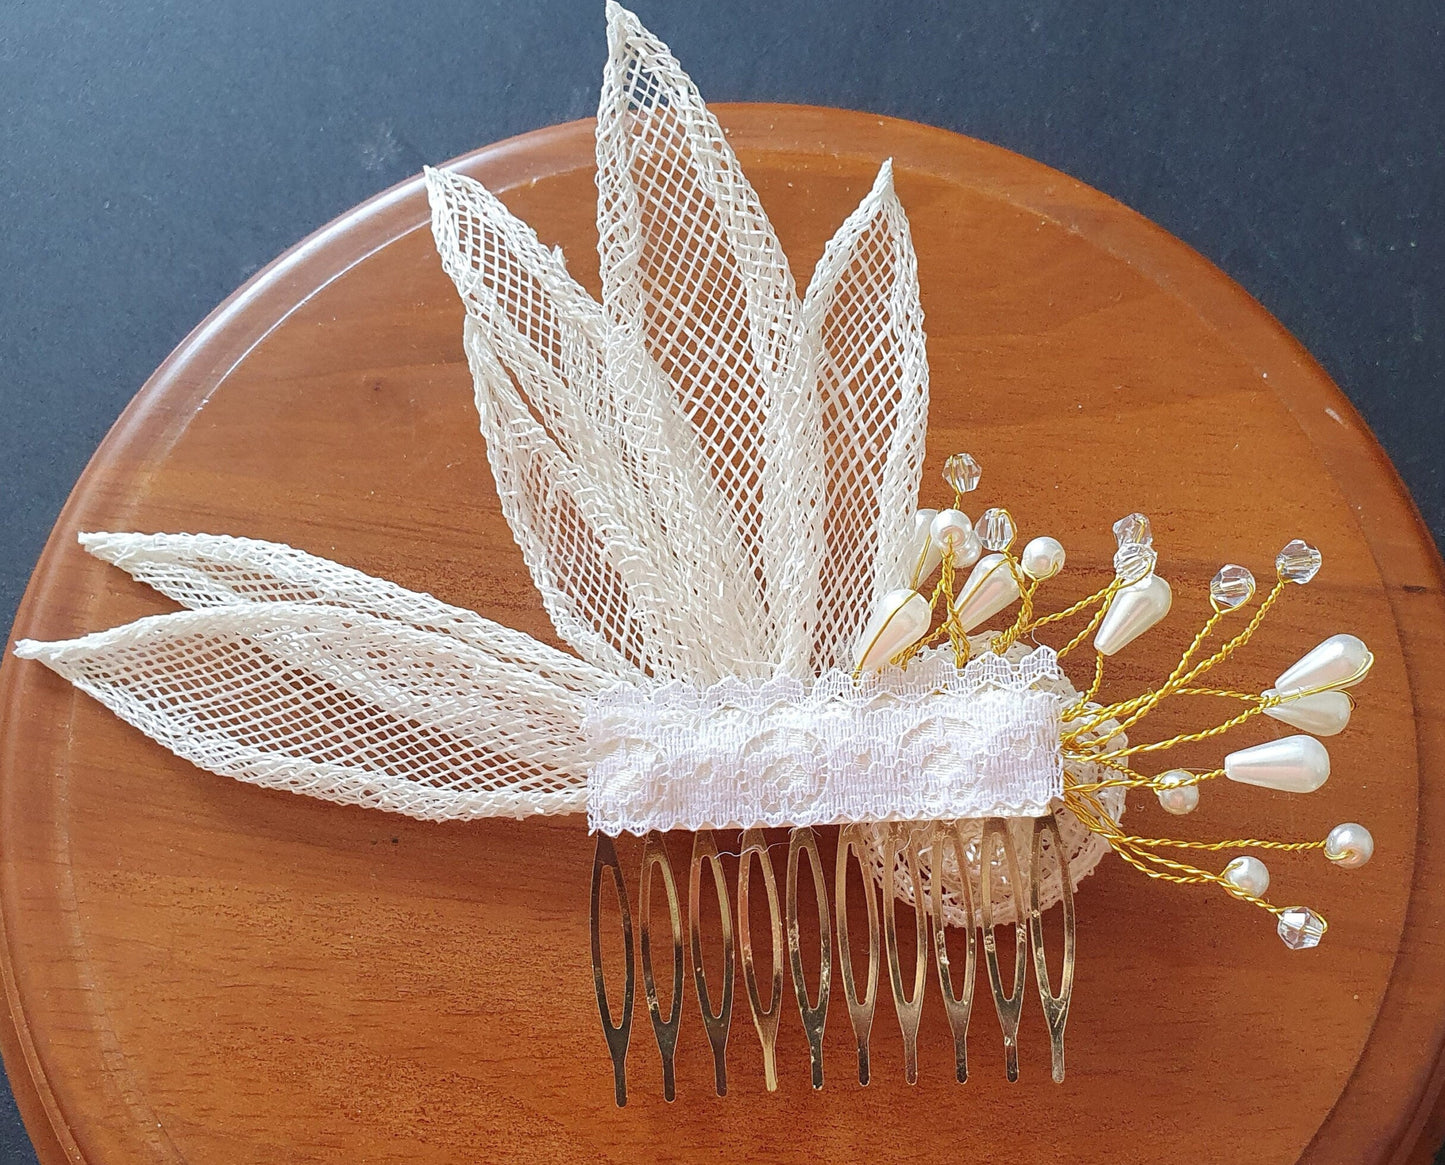 Peineta de novia hecha a mano de bonito diseño con sinami y perlas, para una boda o cualquier otra ocasión especial.